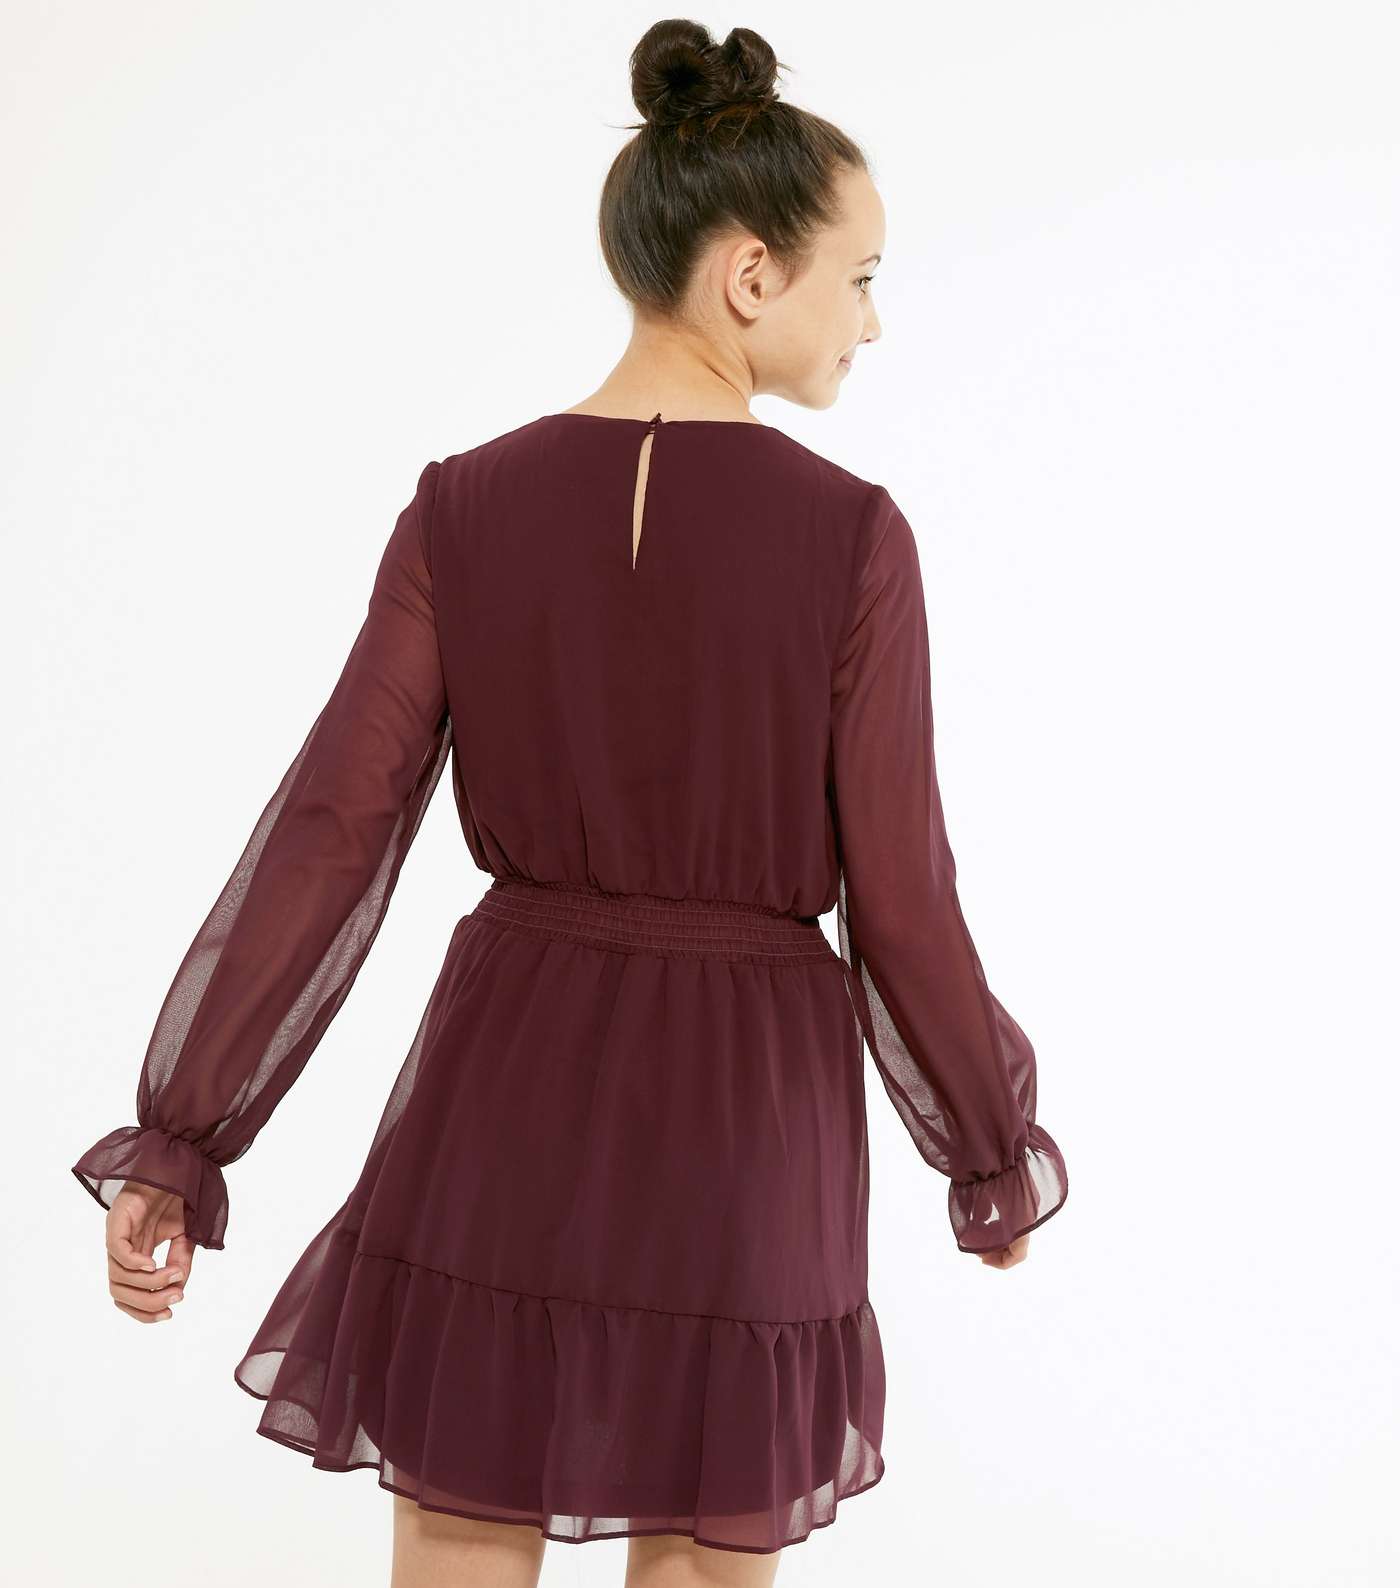 Girls Burgundy Chiffon Tiered Dress Image 3